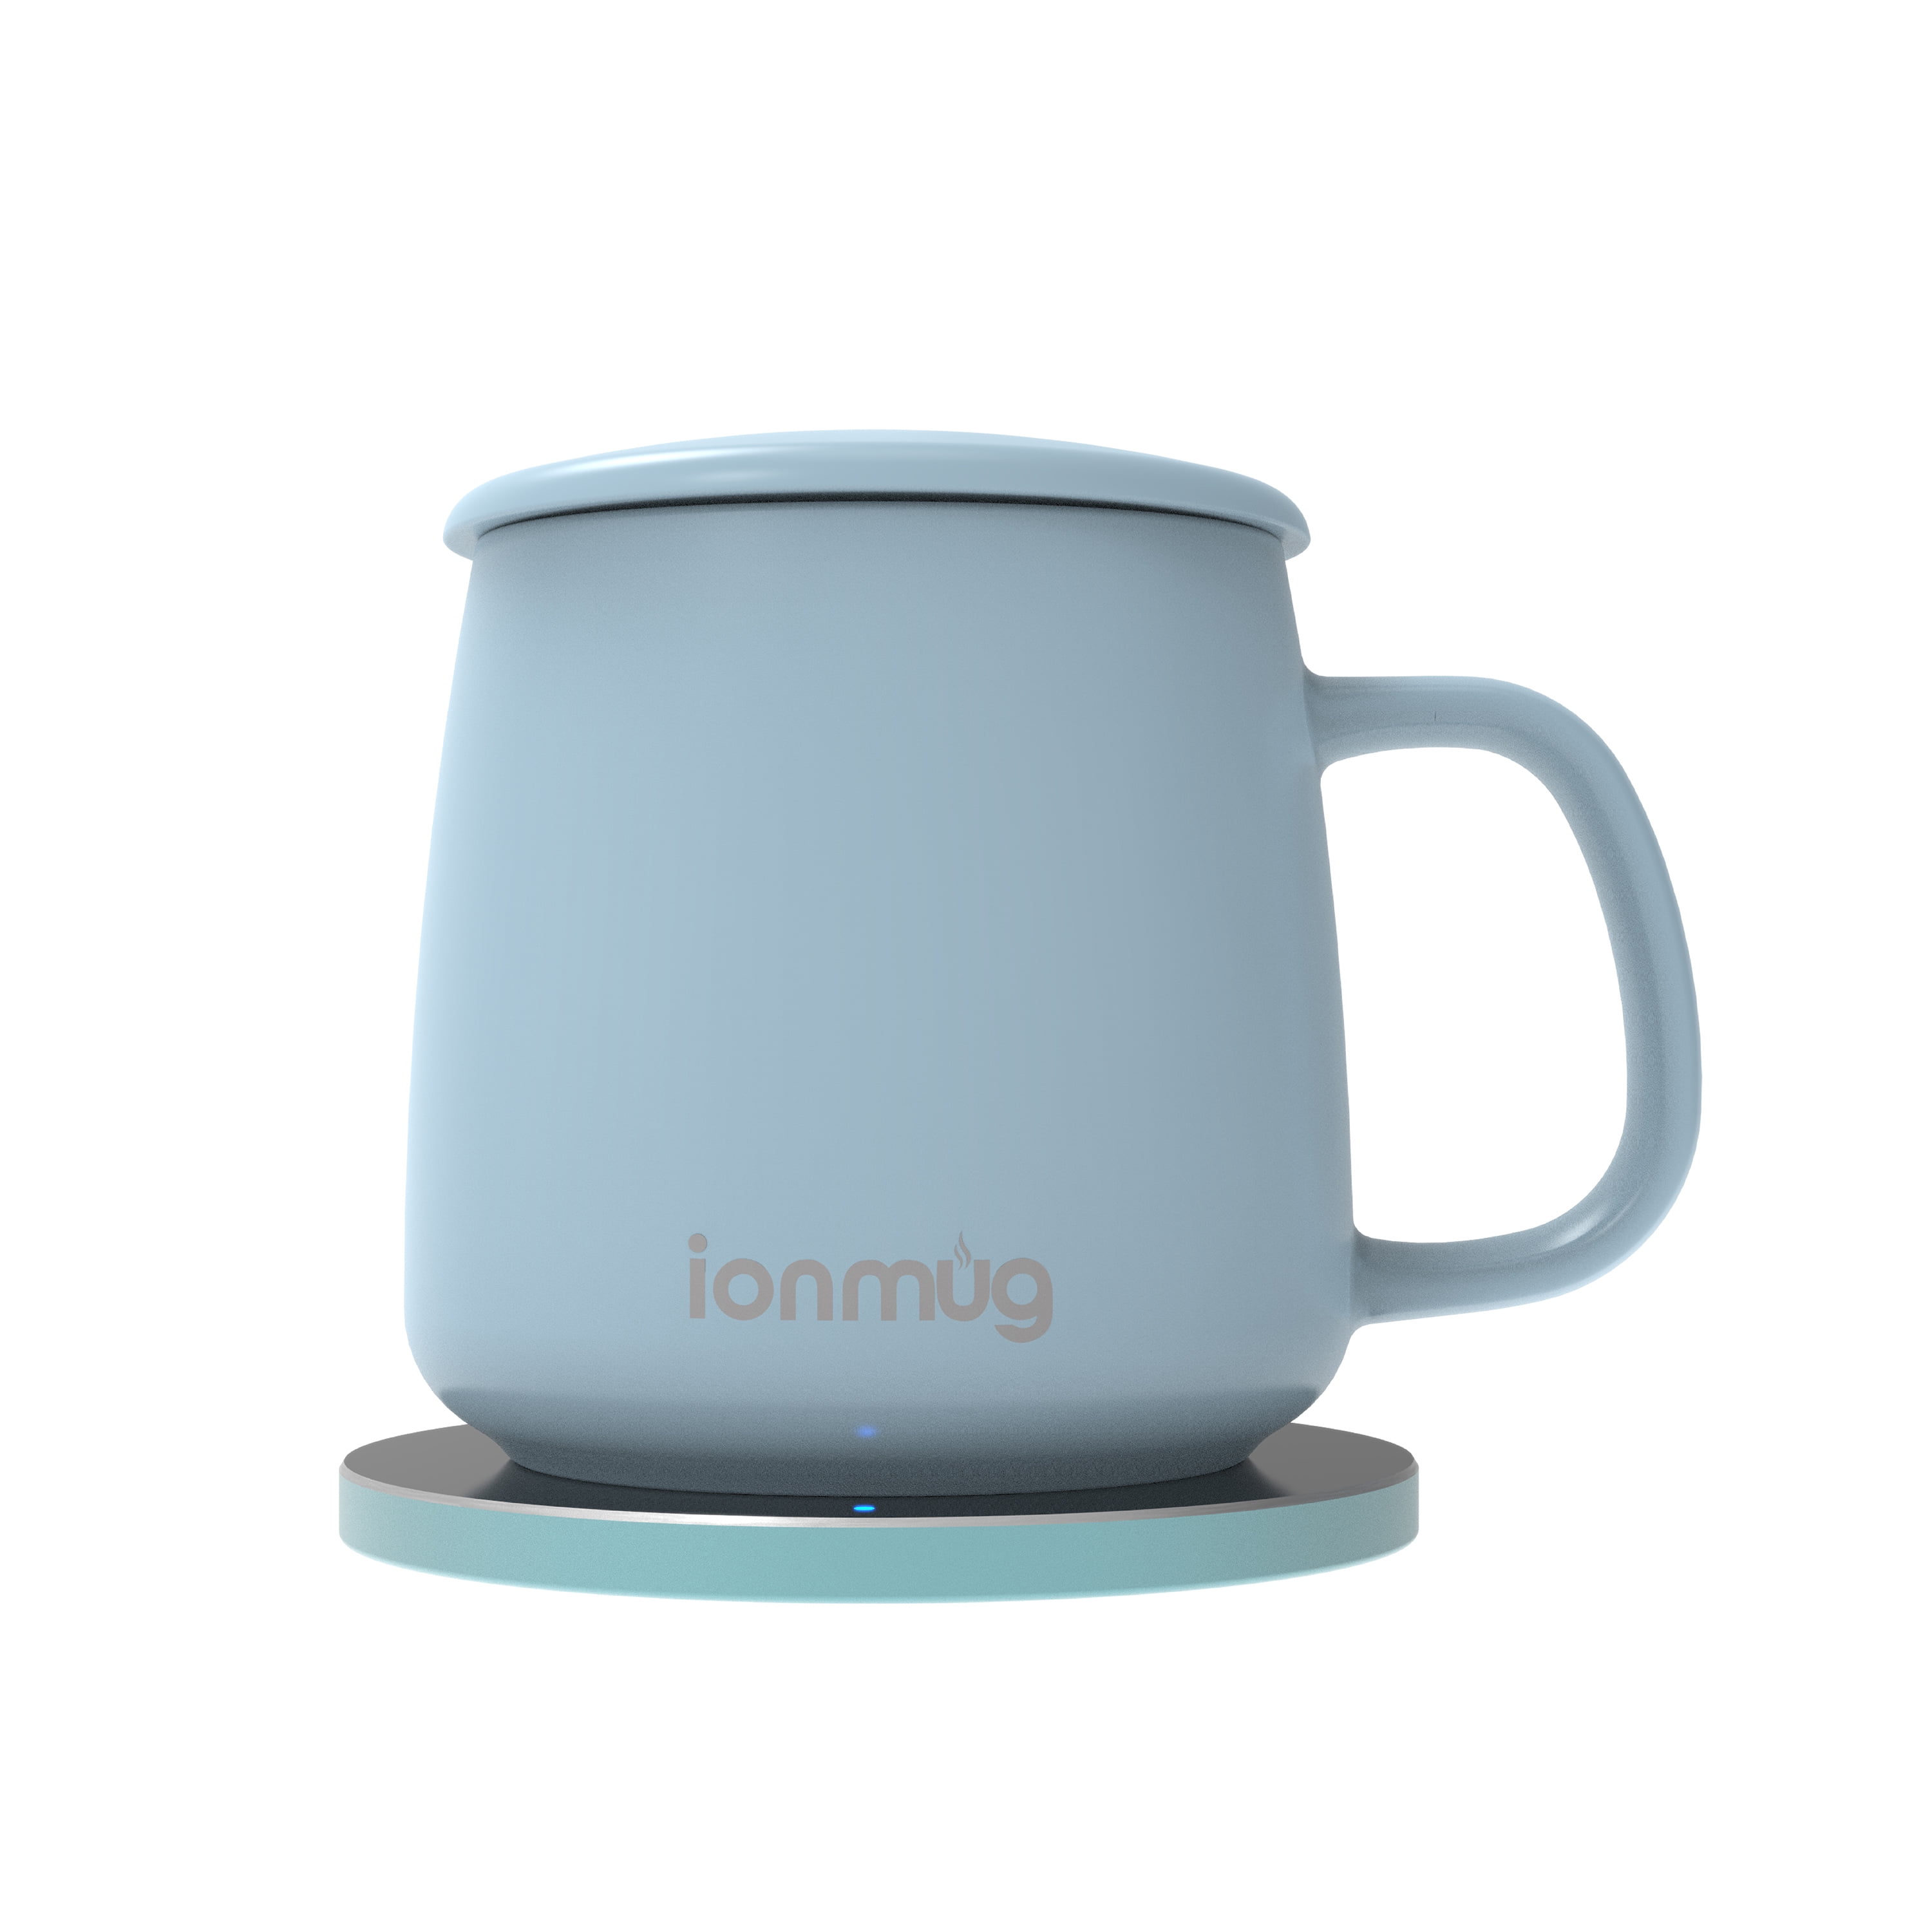 ionMug and Wireless Charging Coaster, 12.8 oz. Ceramic Mug and Coaster